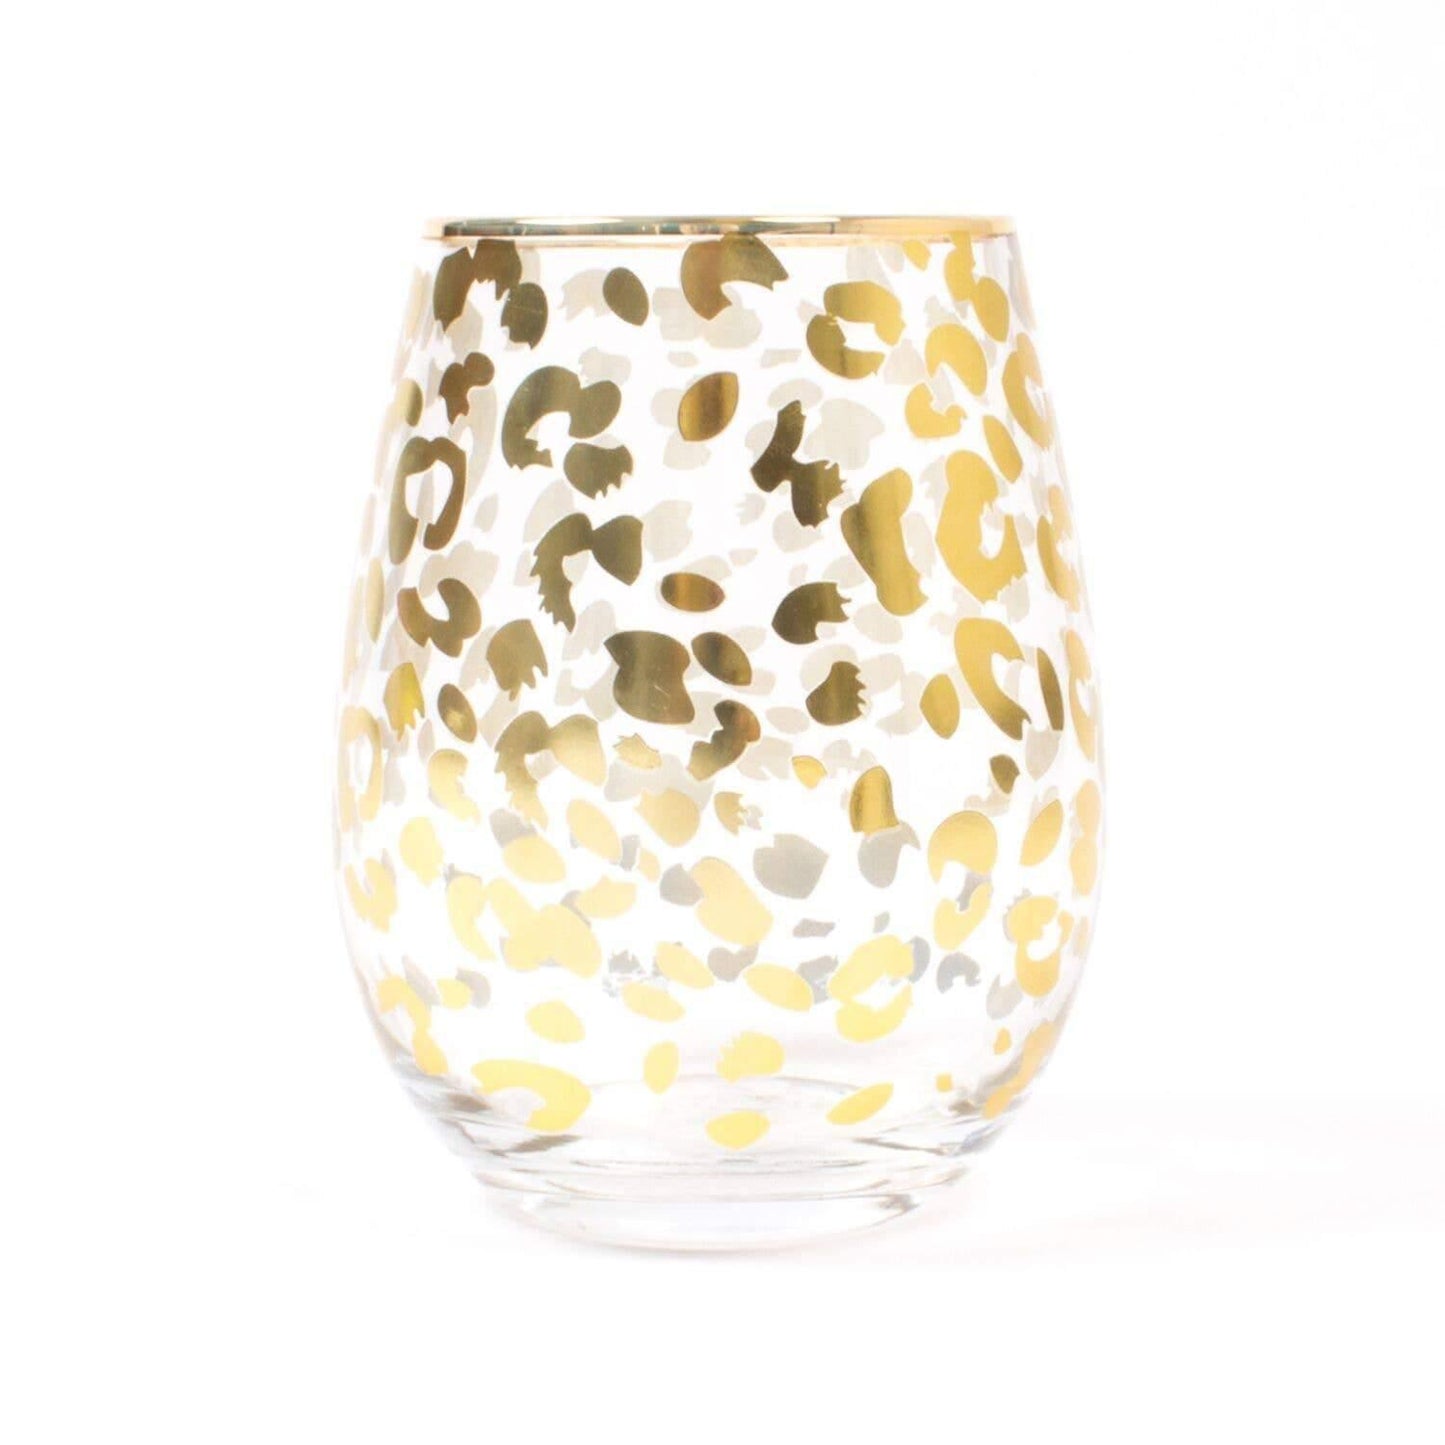 https://sorellegifts.com/cdn/shop/files/gold-leopard-print-20oz-stemless-wine-glass-sorelle-gifts-1.jpg?v=1693875363&width=1445